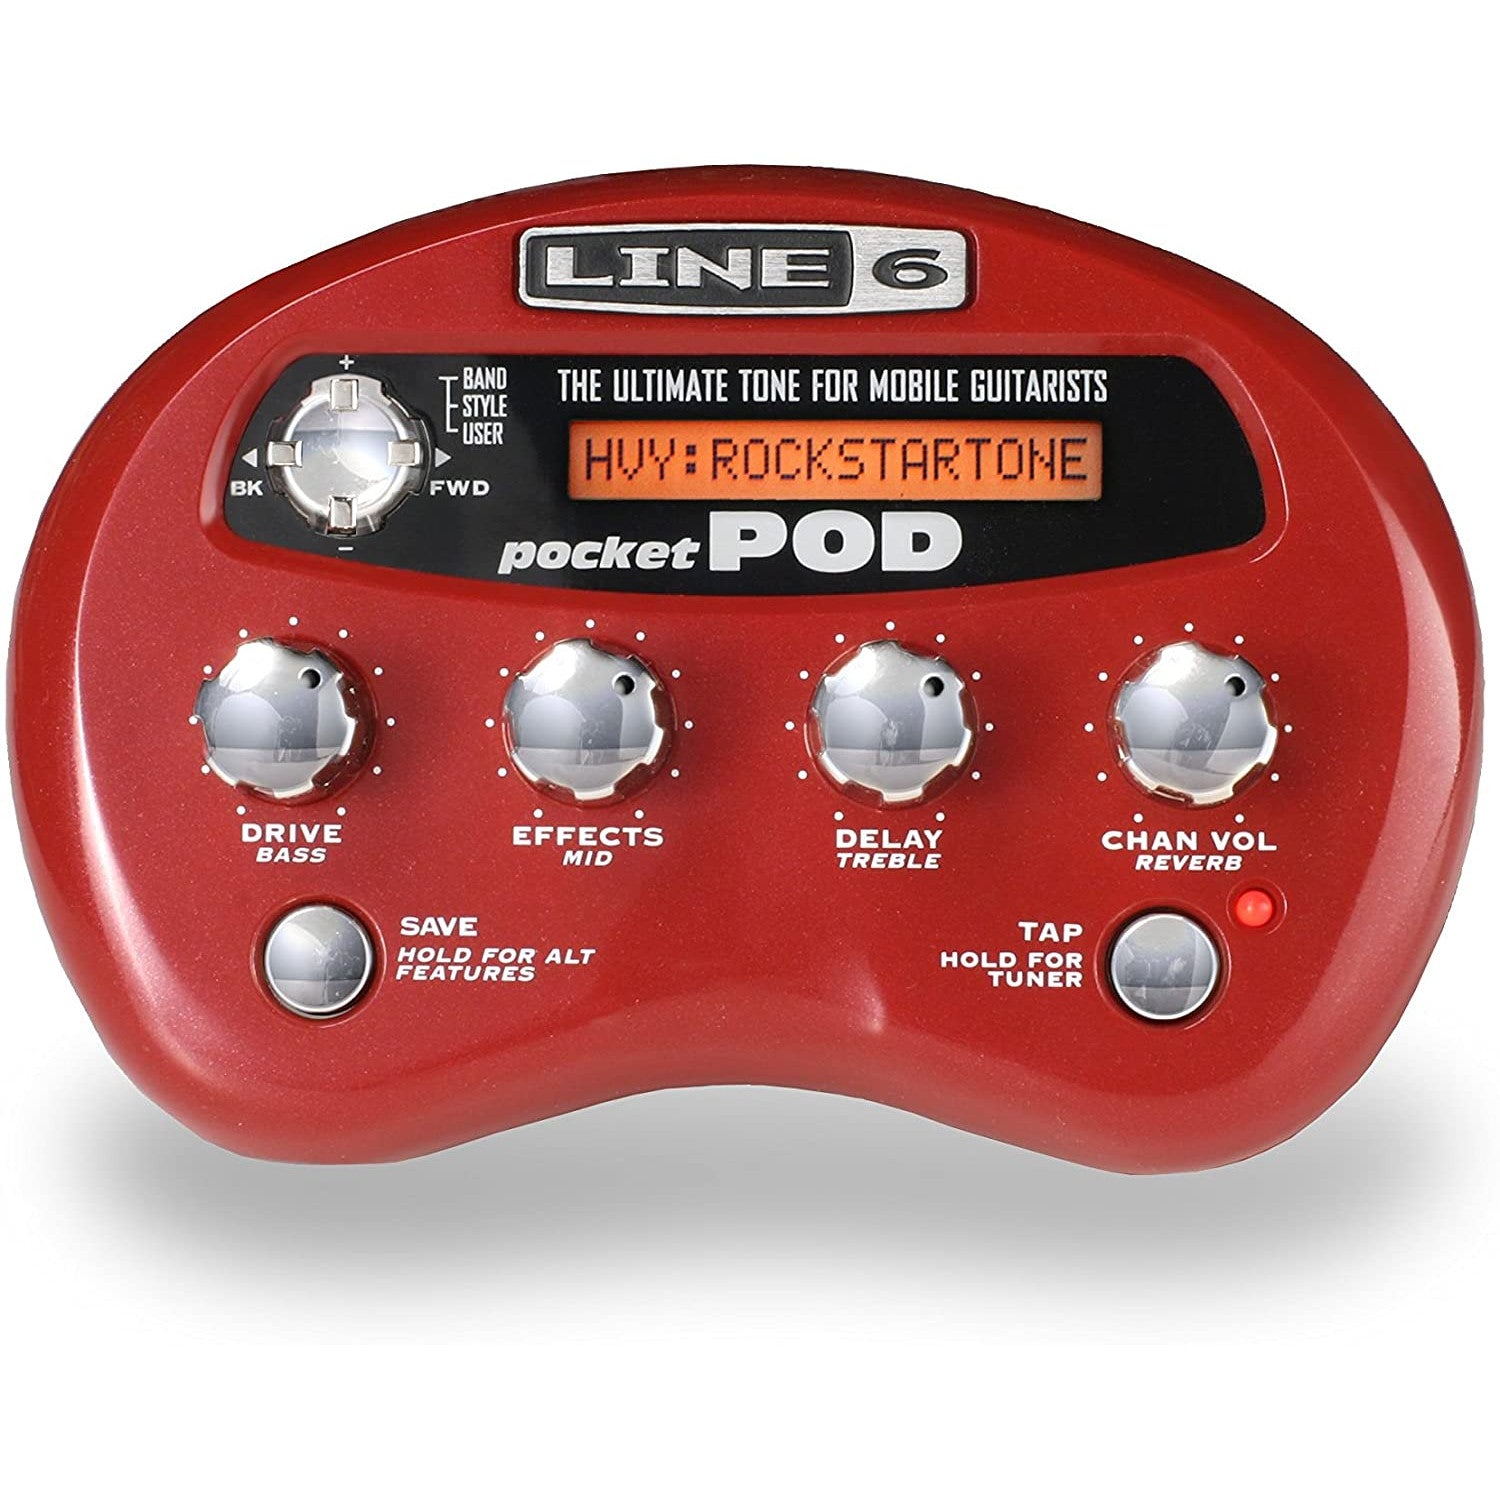 Line 6 Pocket POD Guitar Amp Modeler Front